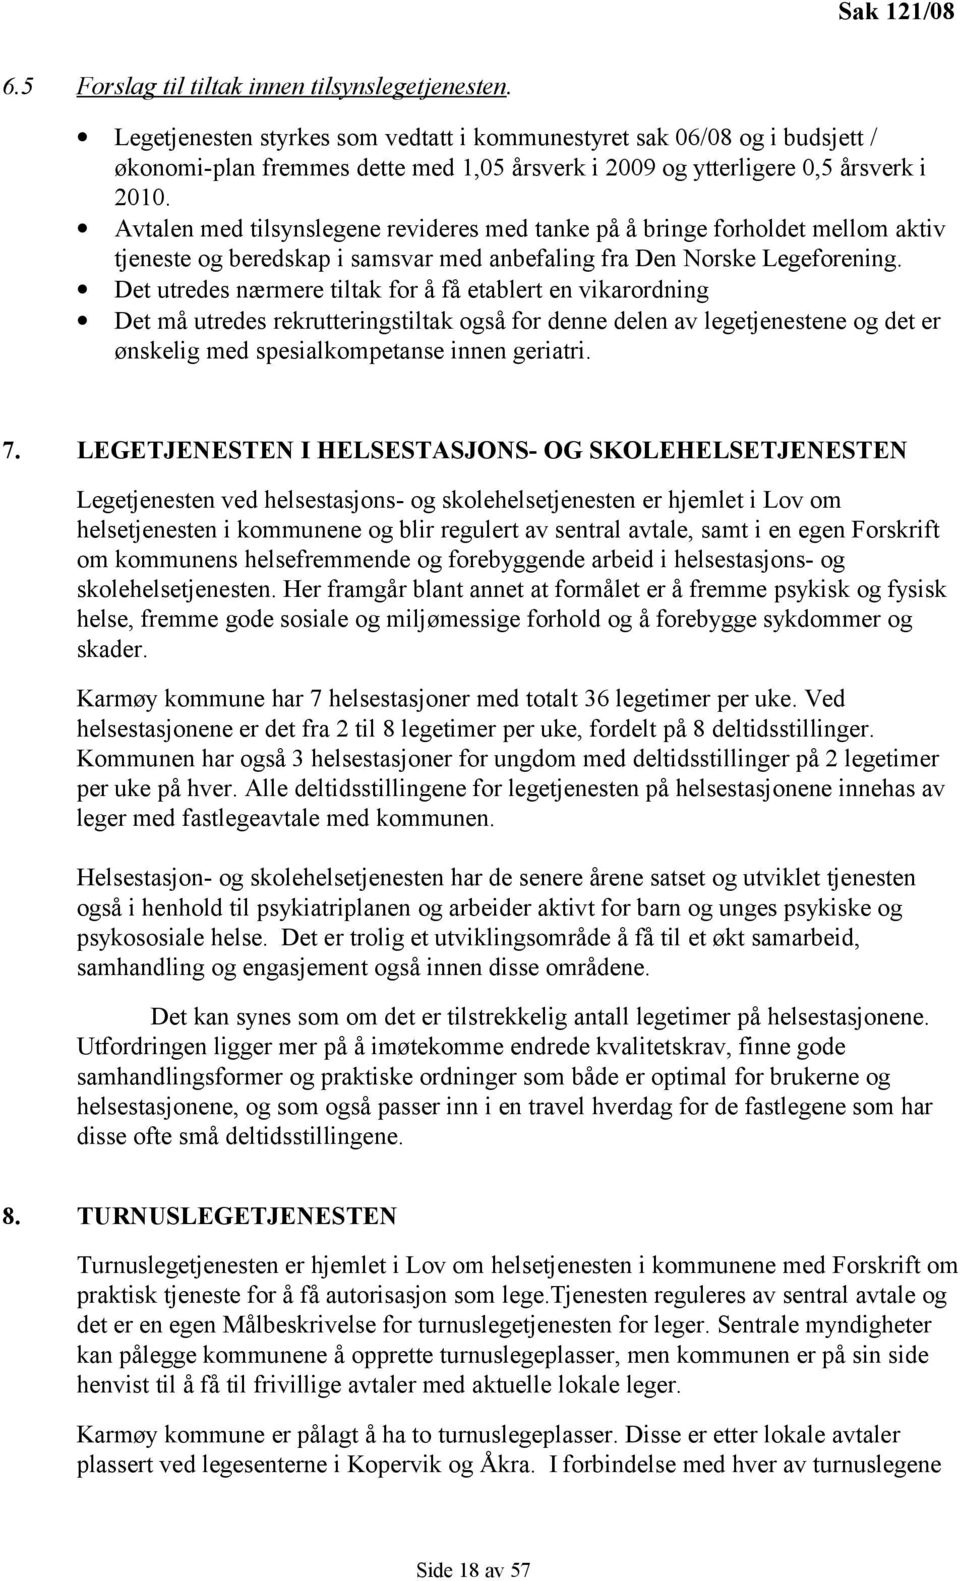 Avtalen med tilsynslegene revideres med tanke på å bringe forholdet mellom aktiv tjeneste og beredskap i samsvar med anbefaling fra Den Norske Legeforening.